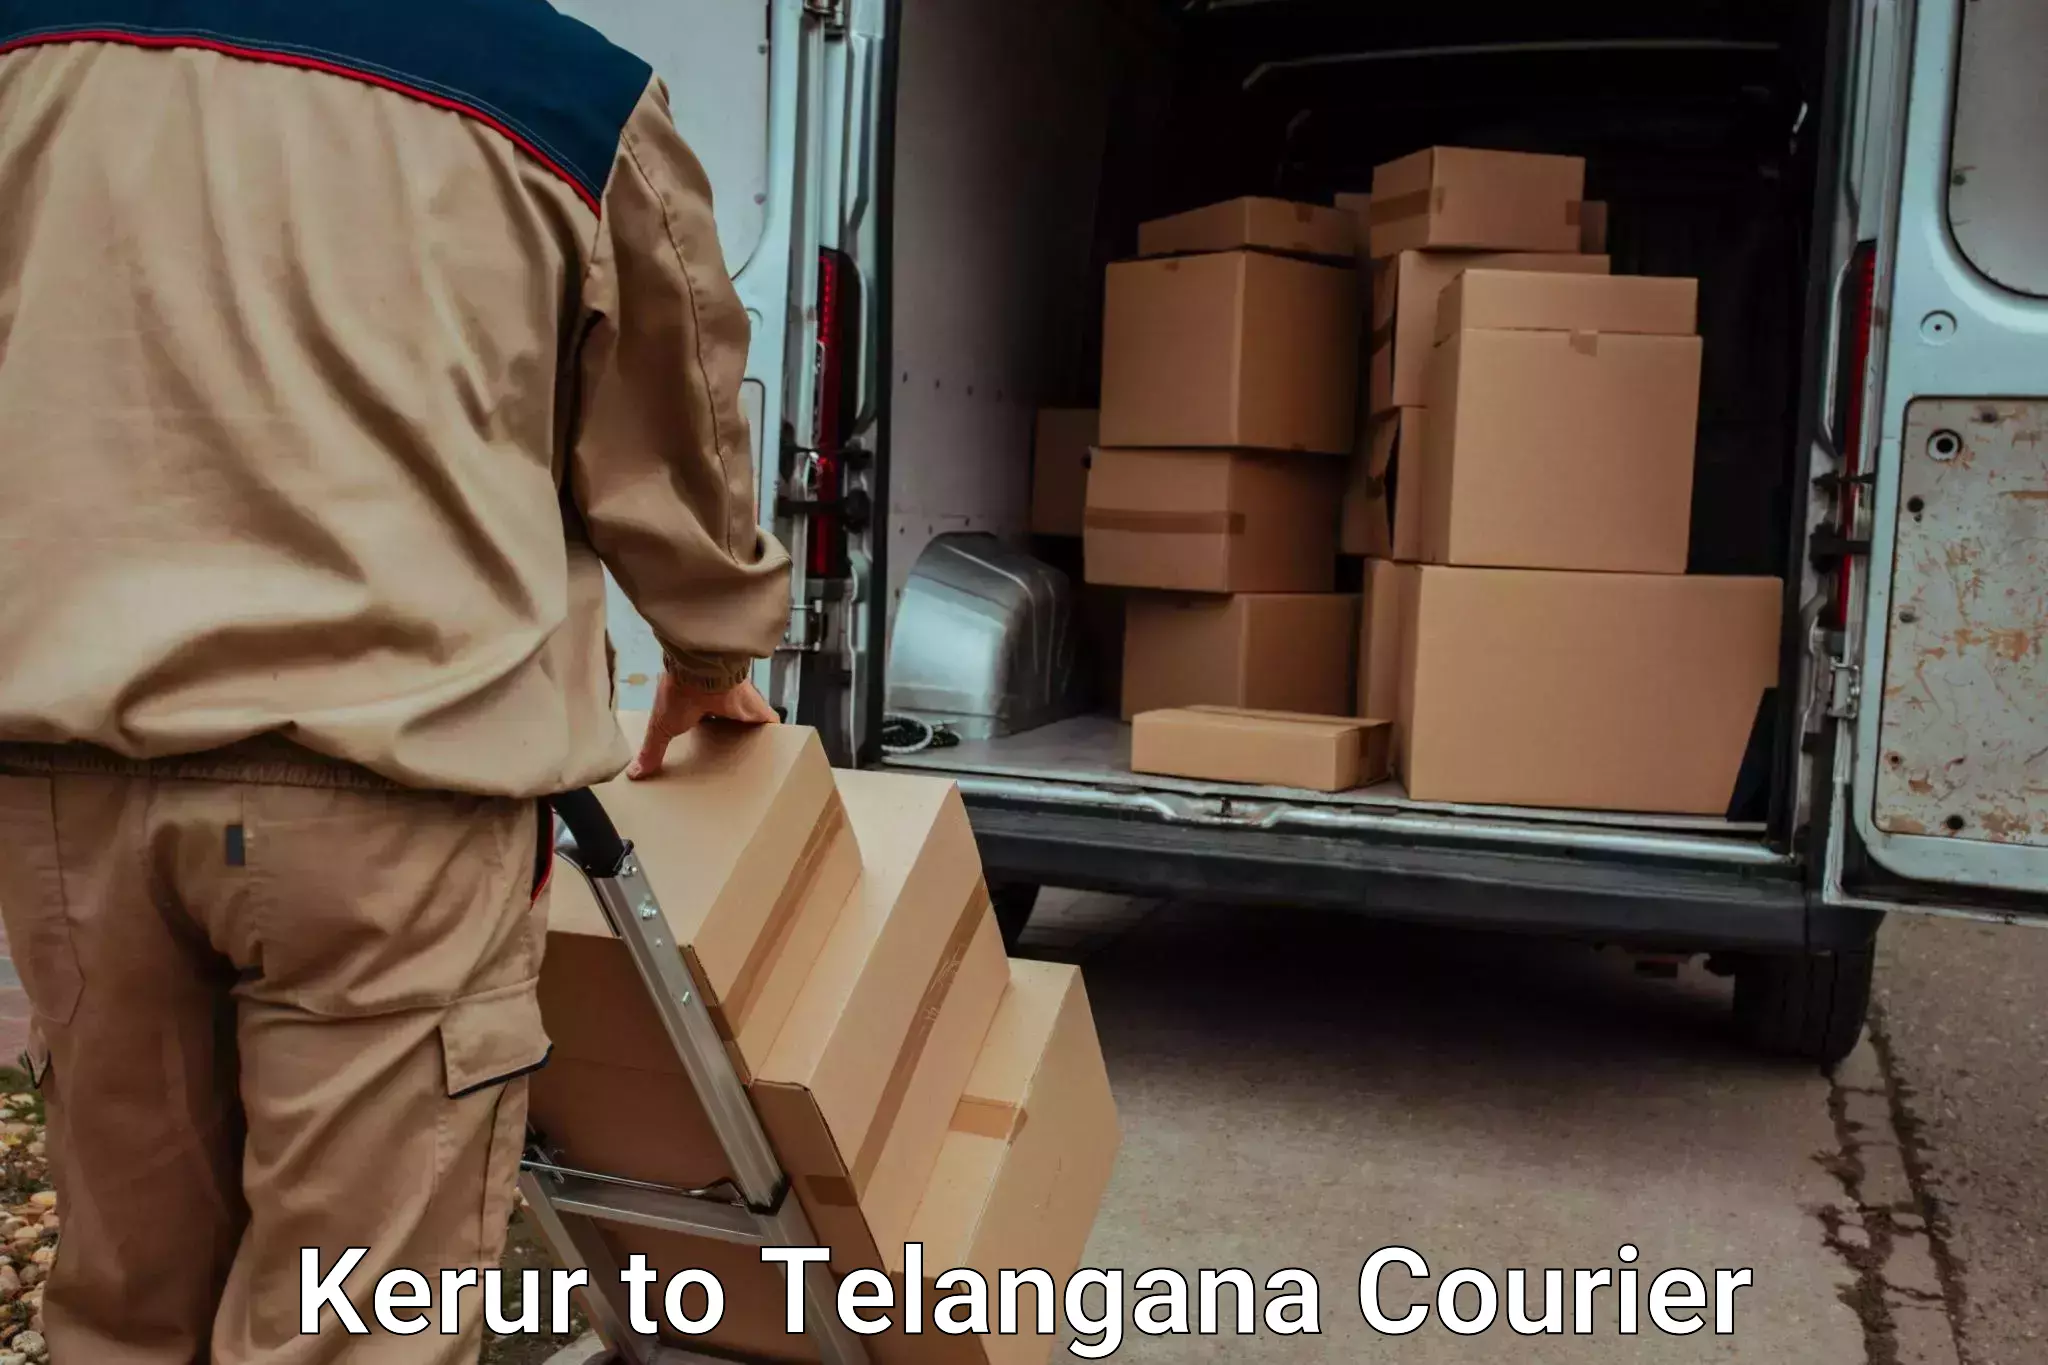 Baggage shipping experience in Kerur to Sadashivpet